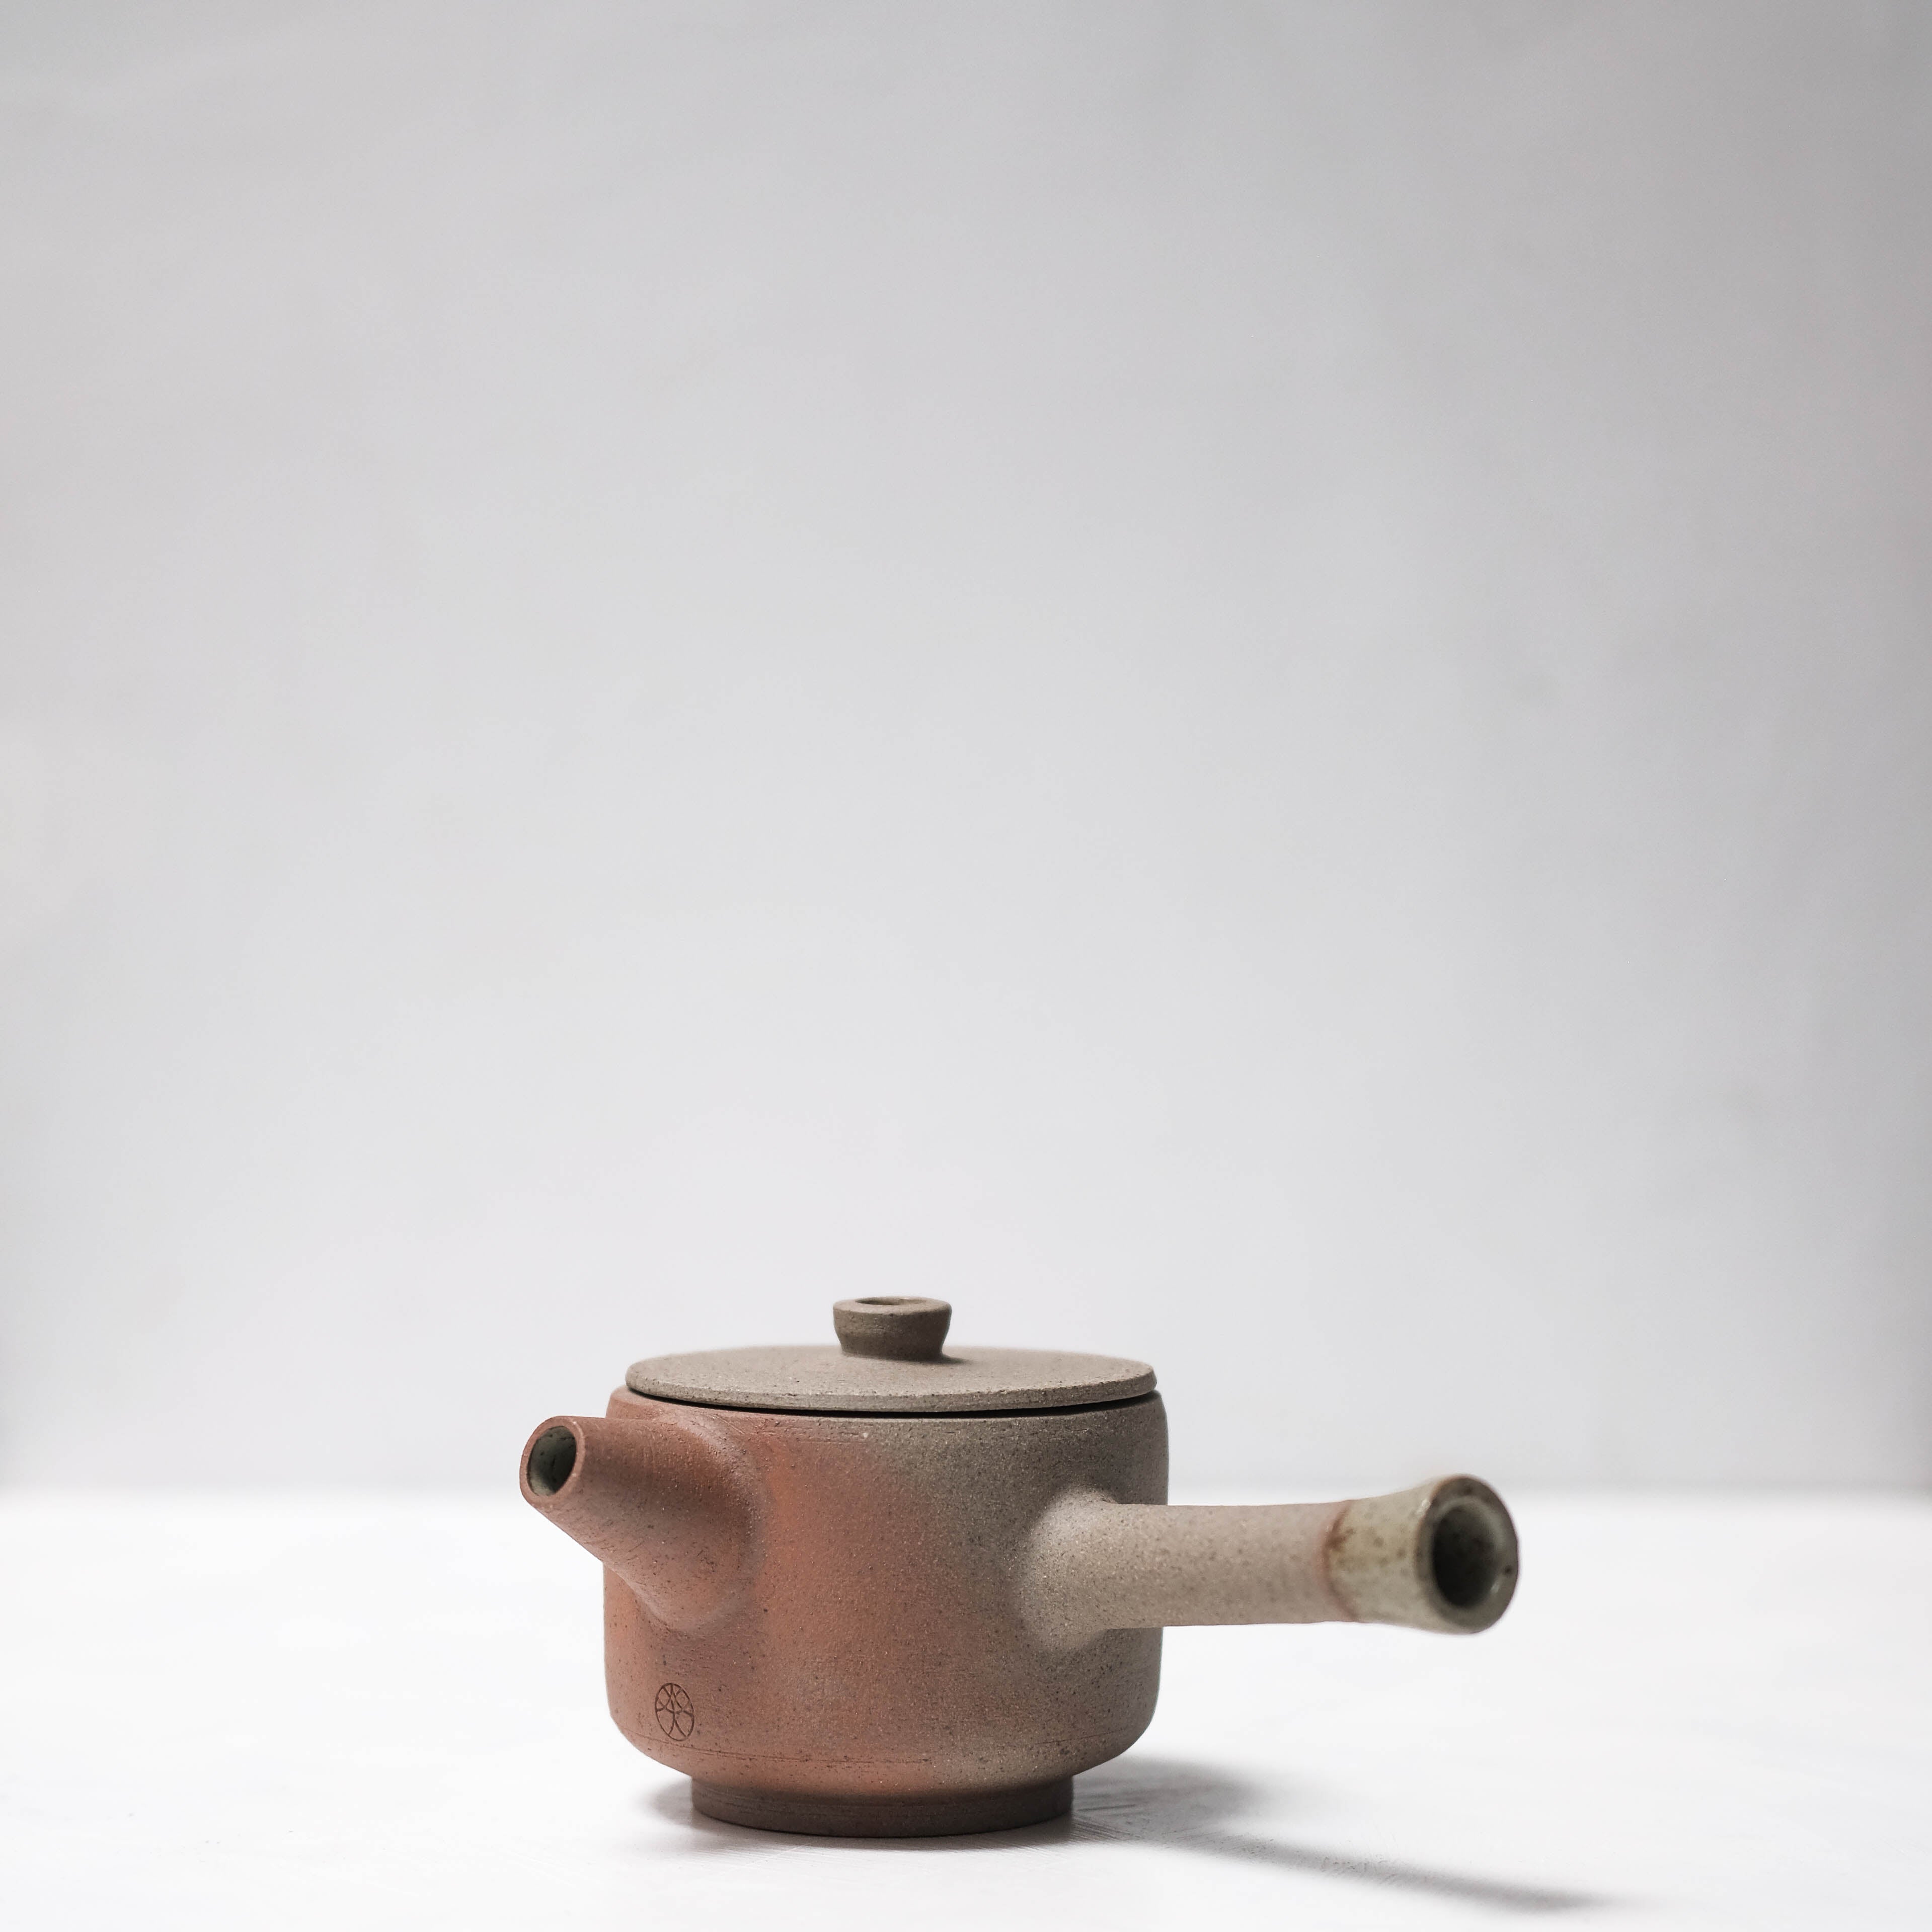 Haigusuri (灰釉) Teapot #ASH51